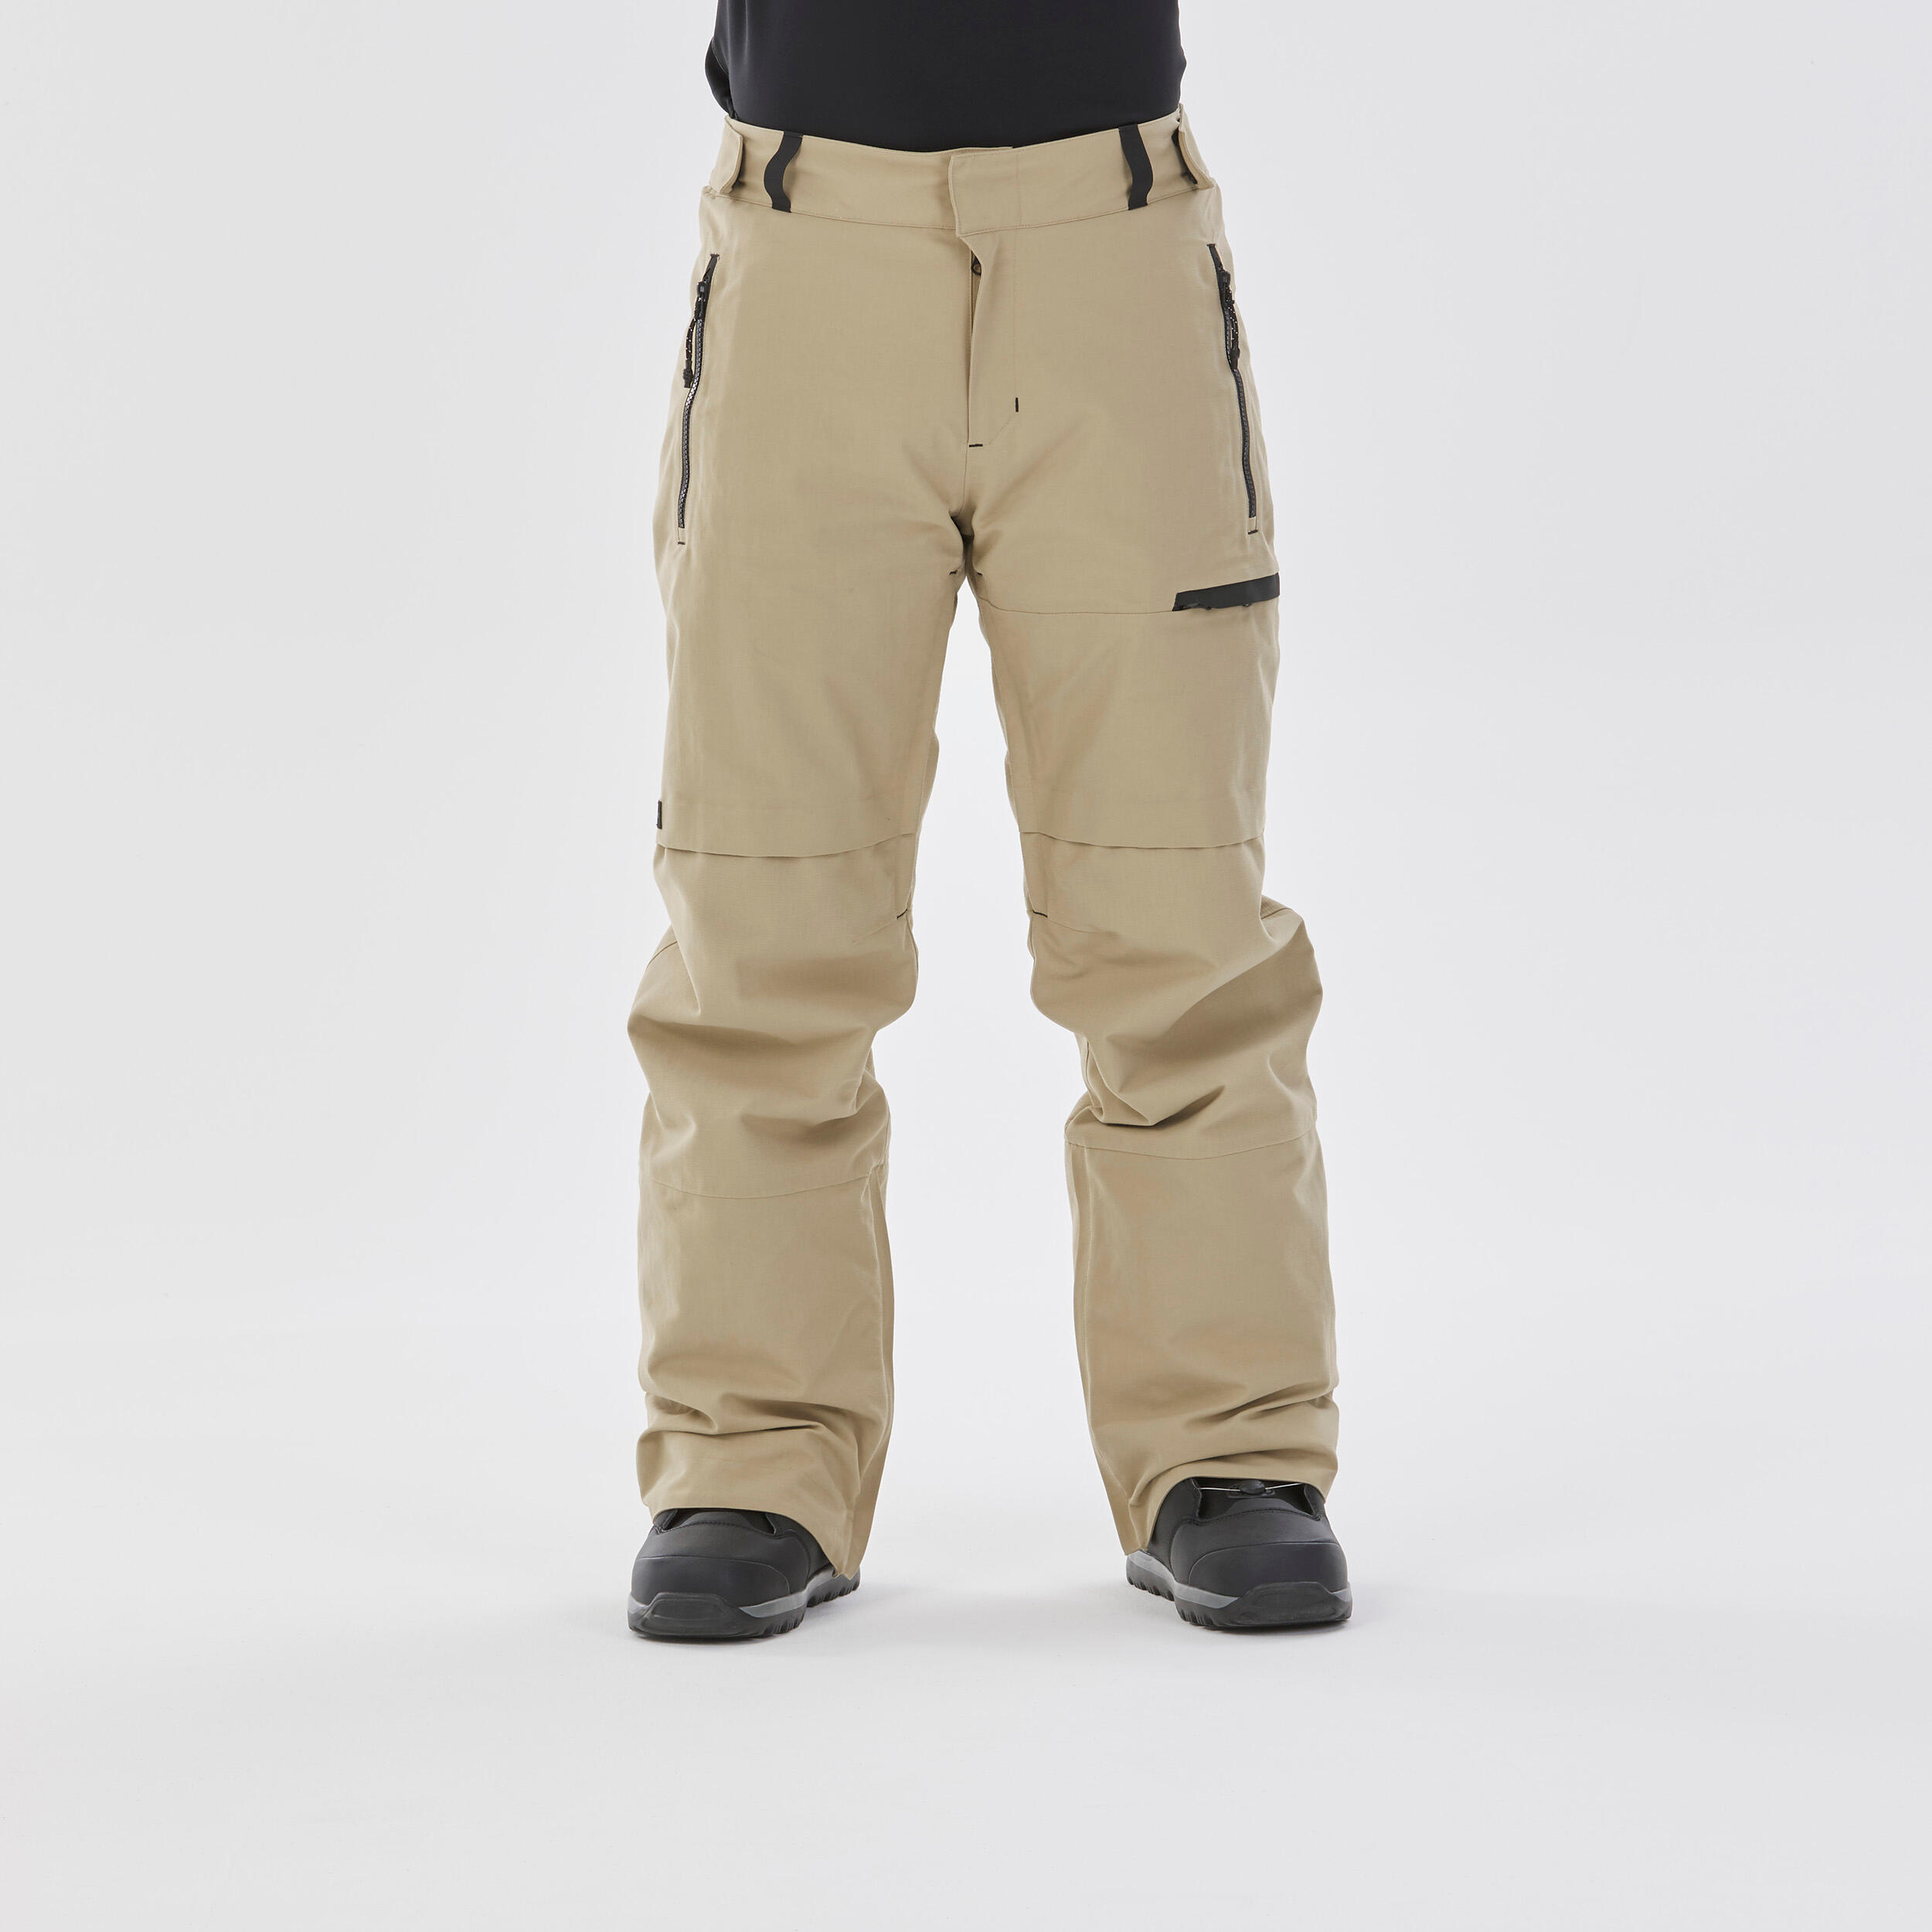 Pantalon Impermeabil Snowboard SNB500 Bej Bărbați Bărbaţi imagine 2022